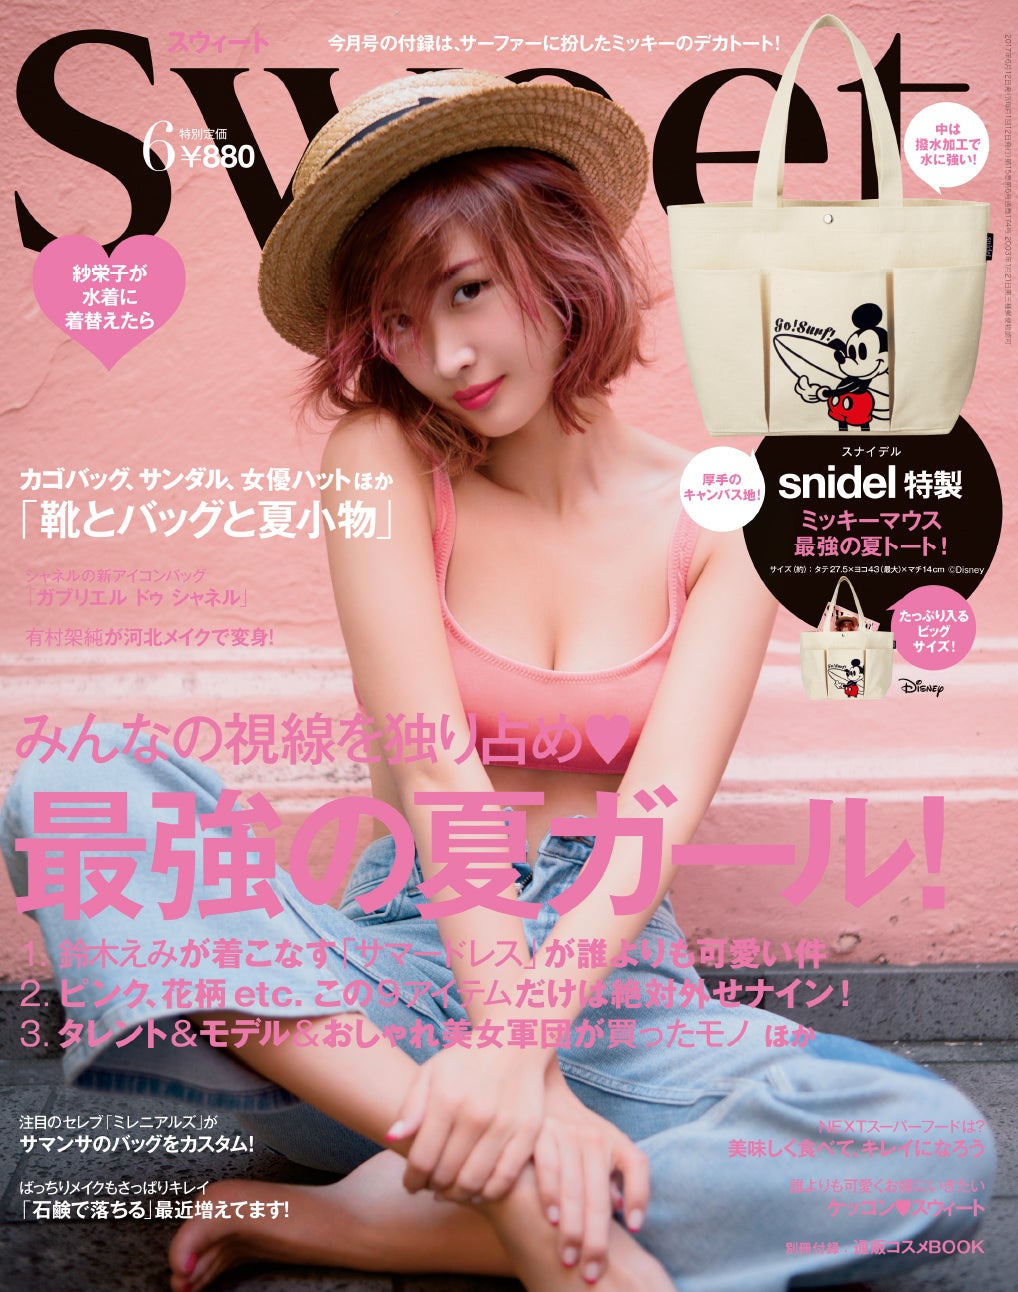 紗栄子、美ヒップ際立つビキニスタイルに釘づけ - モデルプレス